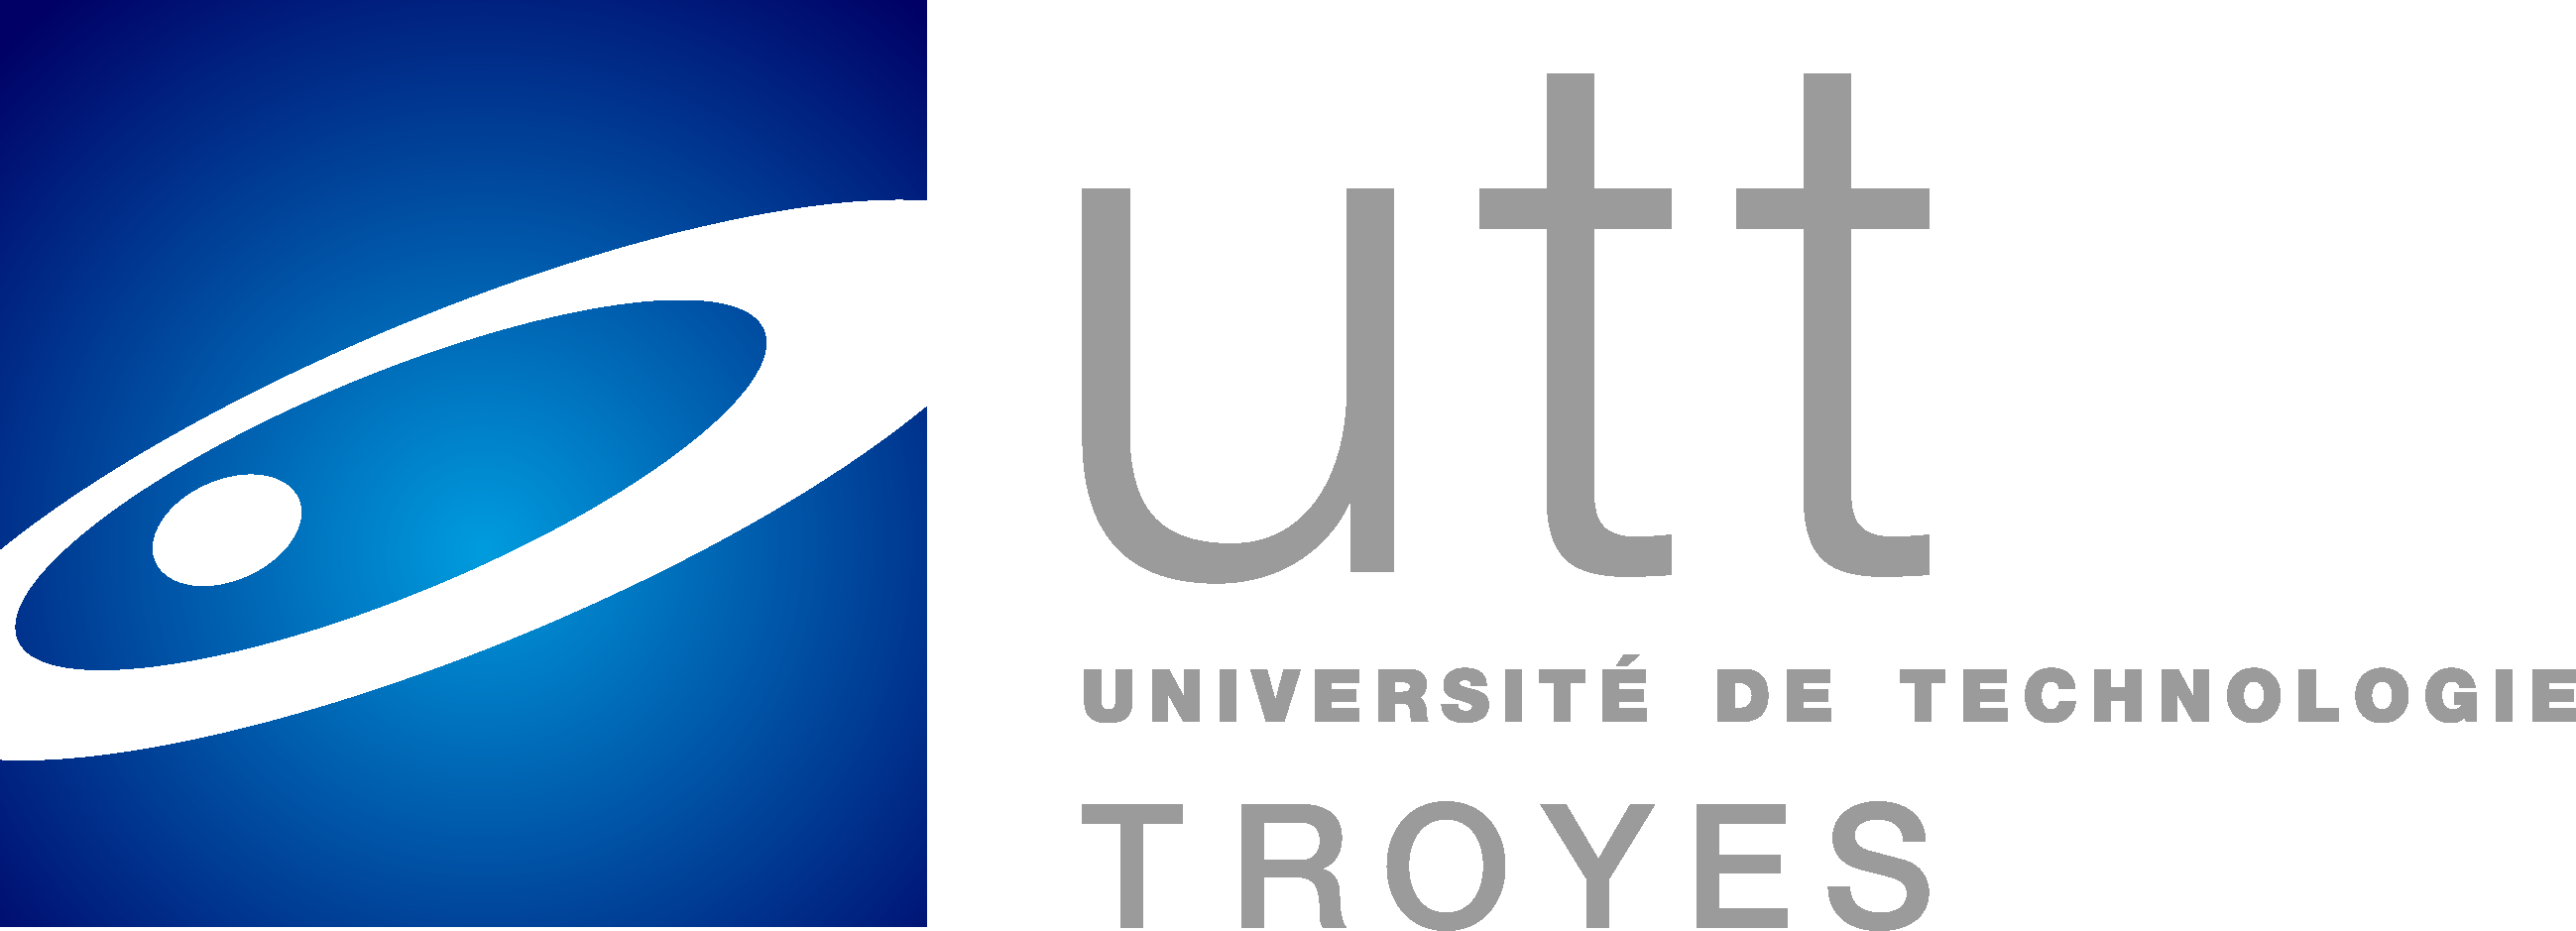 Université de technologie de Troyes